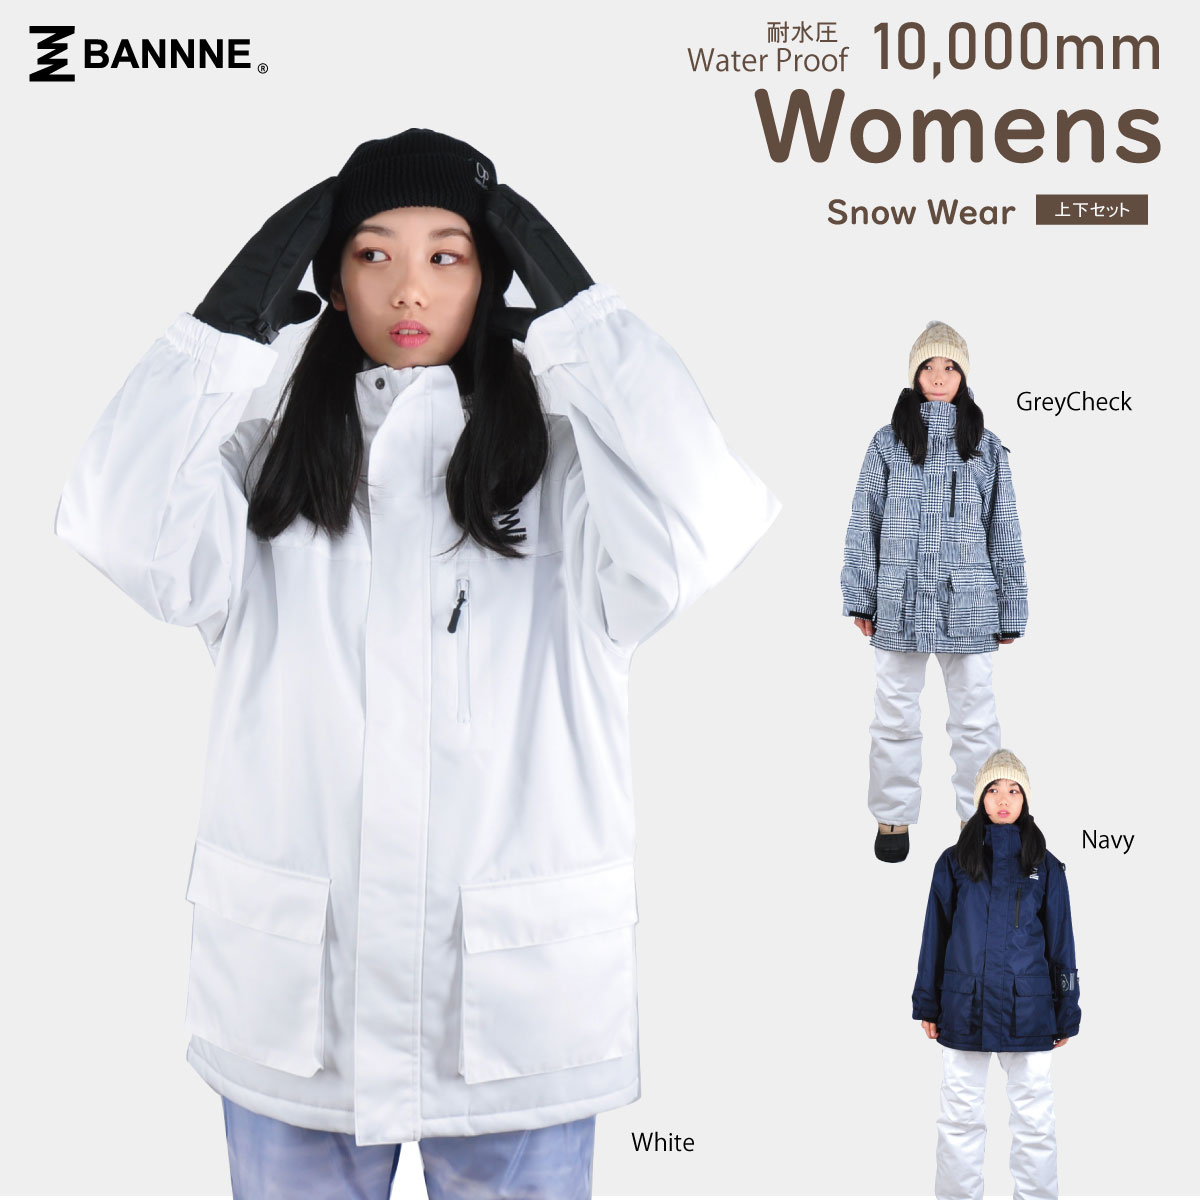 BANNNE – バンネオフィシャルサイト